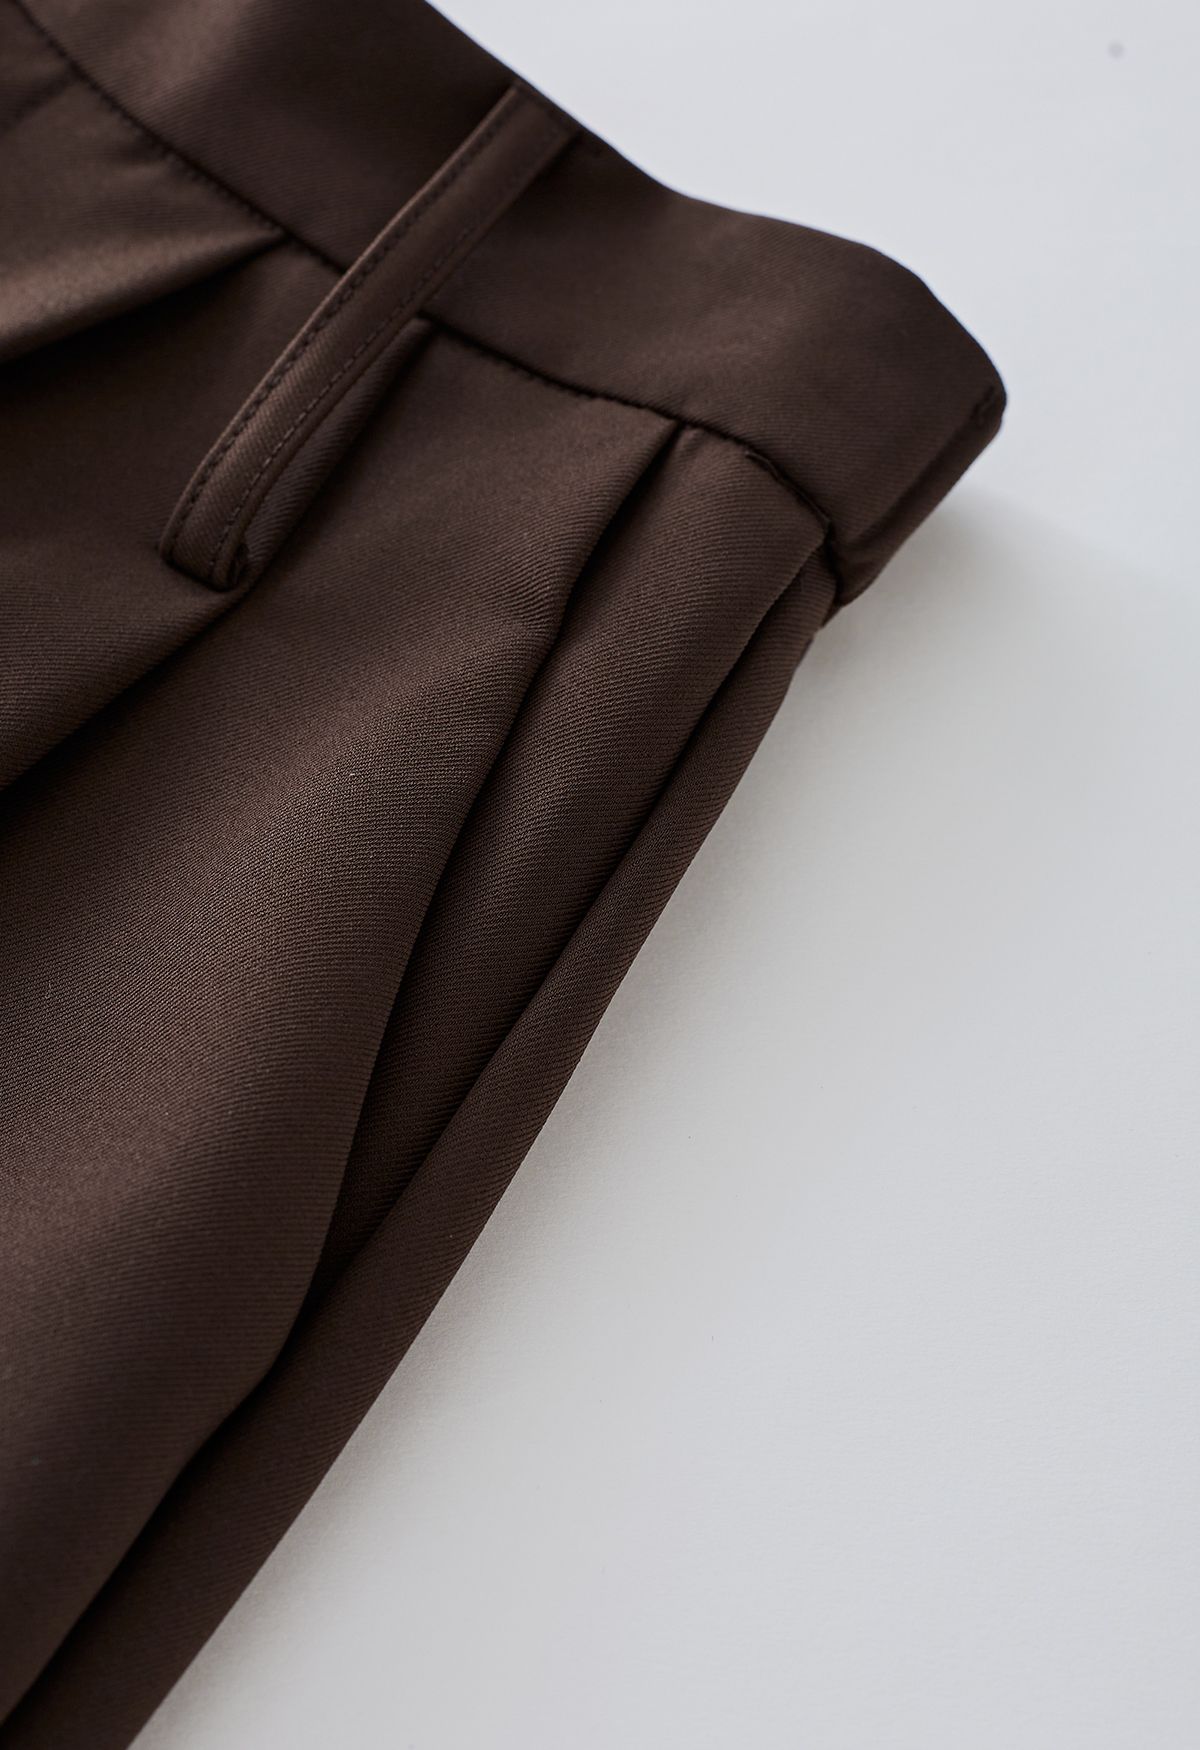 Pantalones cortos con dobladillo holgado y cinturón abotonado en marrón